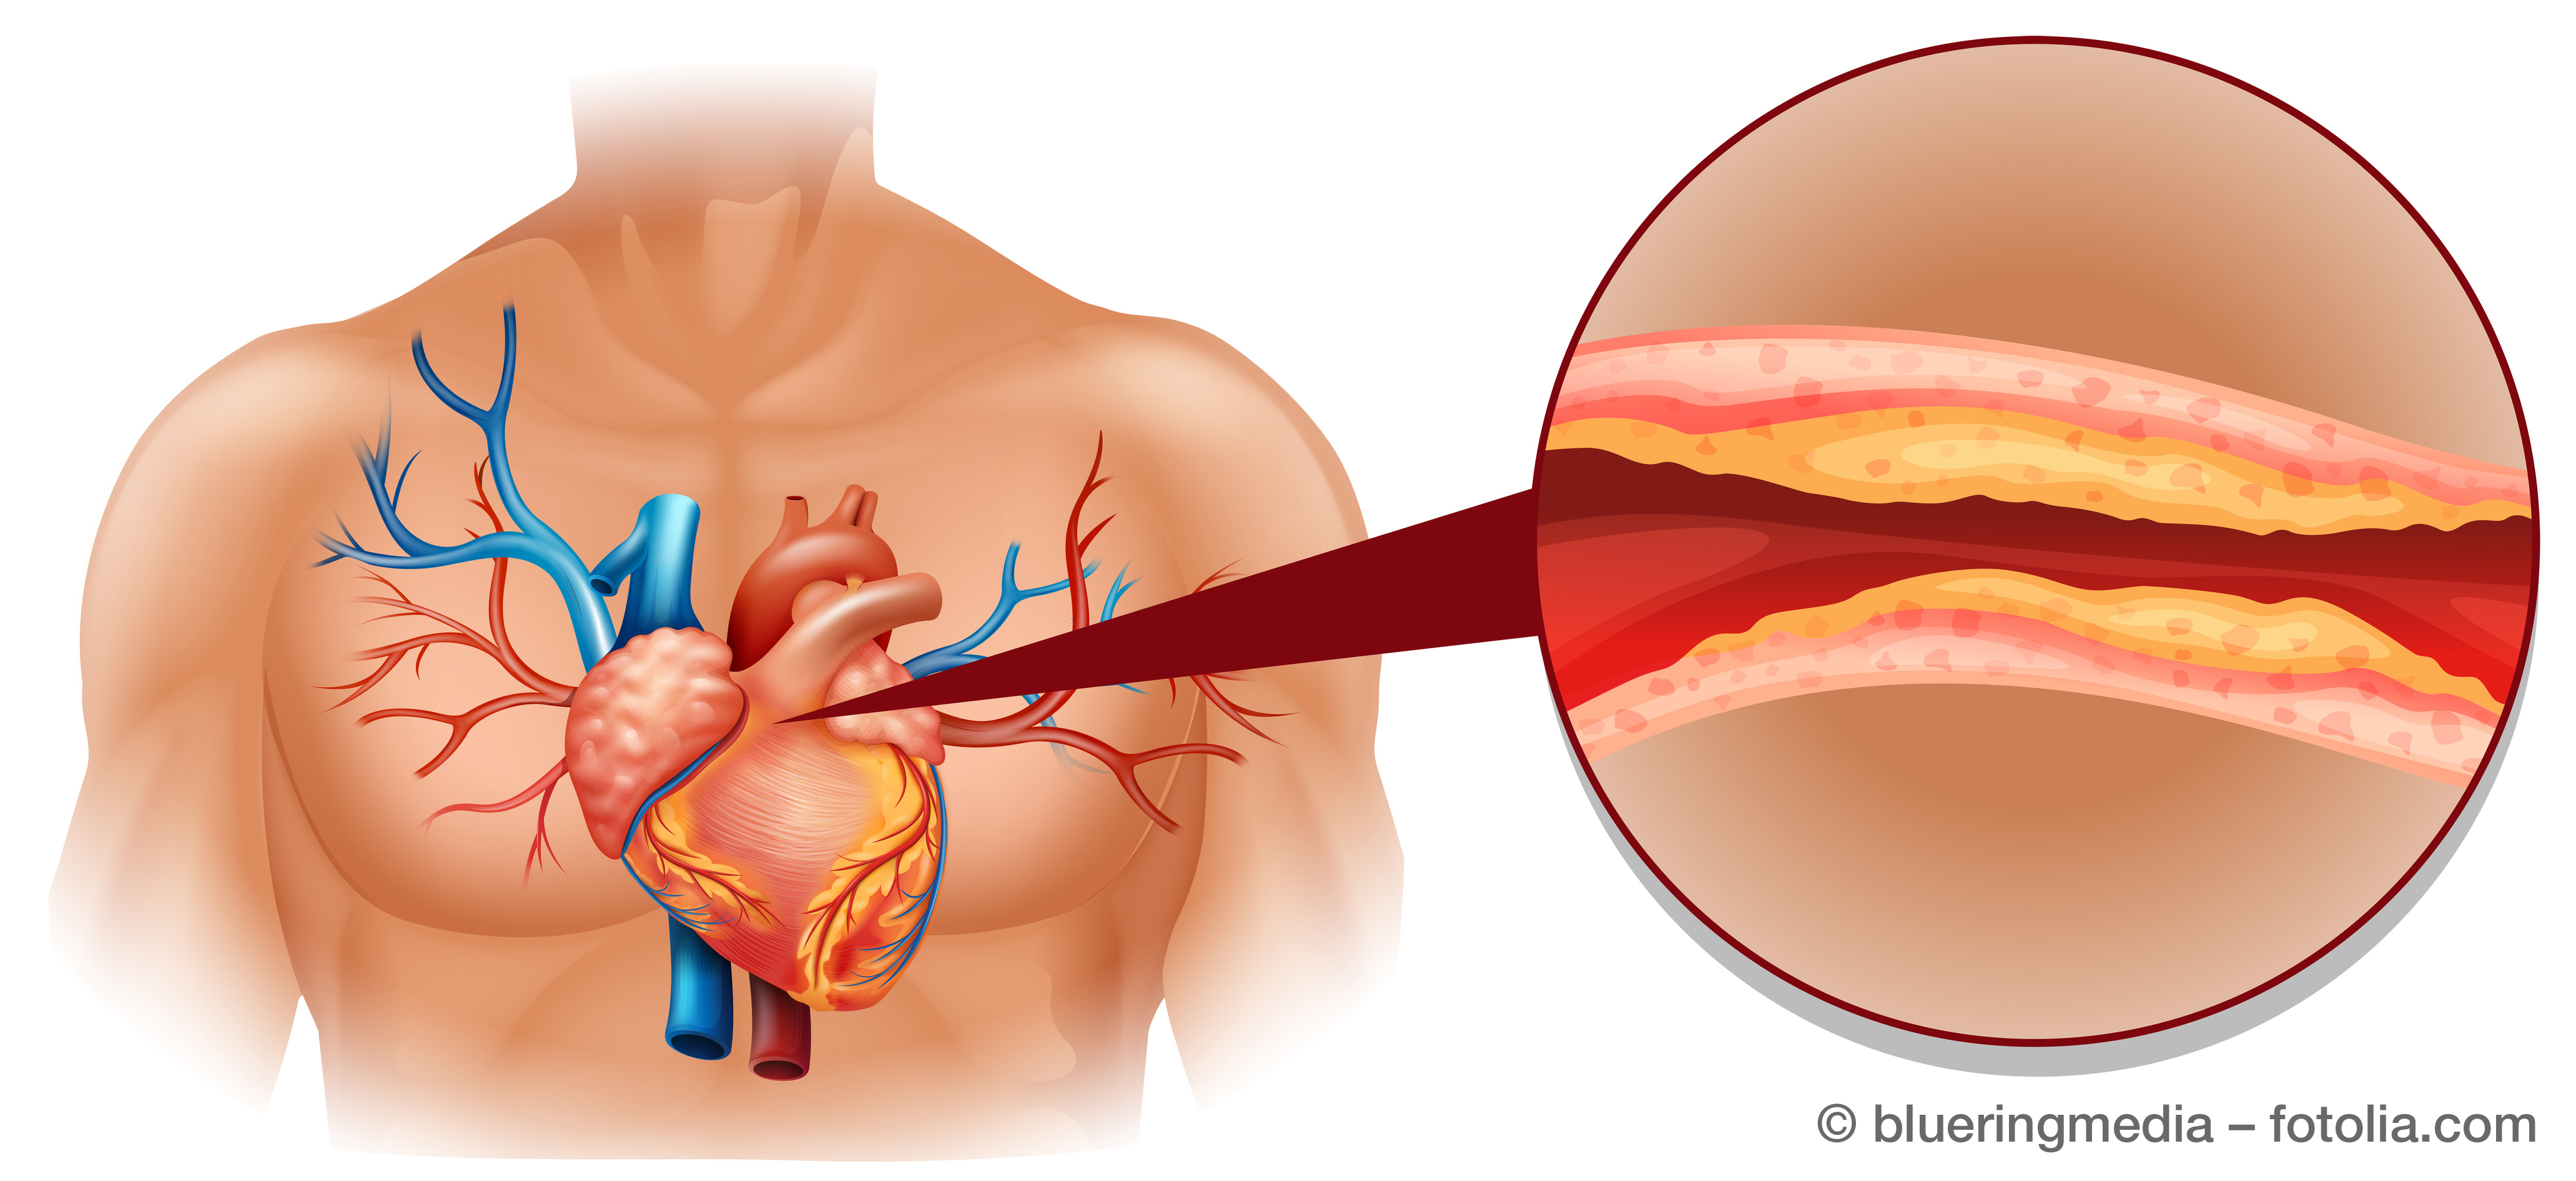 Hohes Cholesterin ist die häufigste Ursache für einen Herzinfarkt